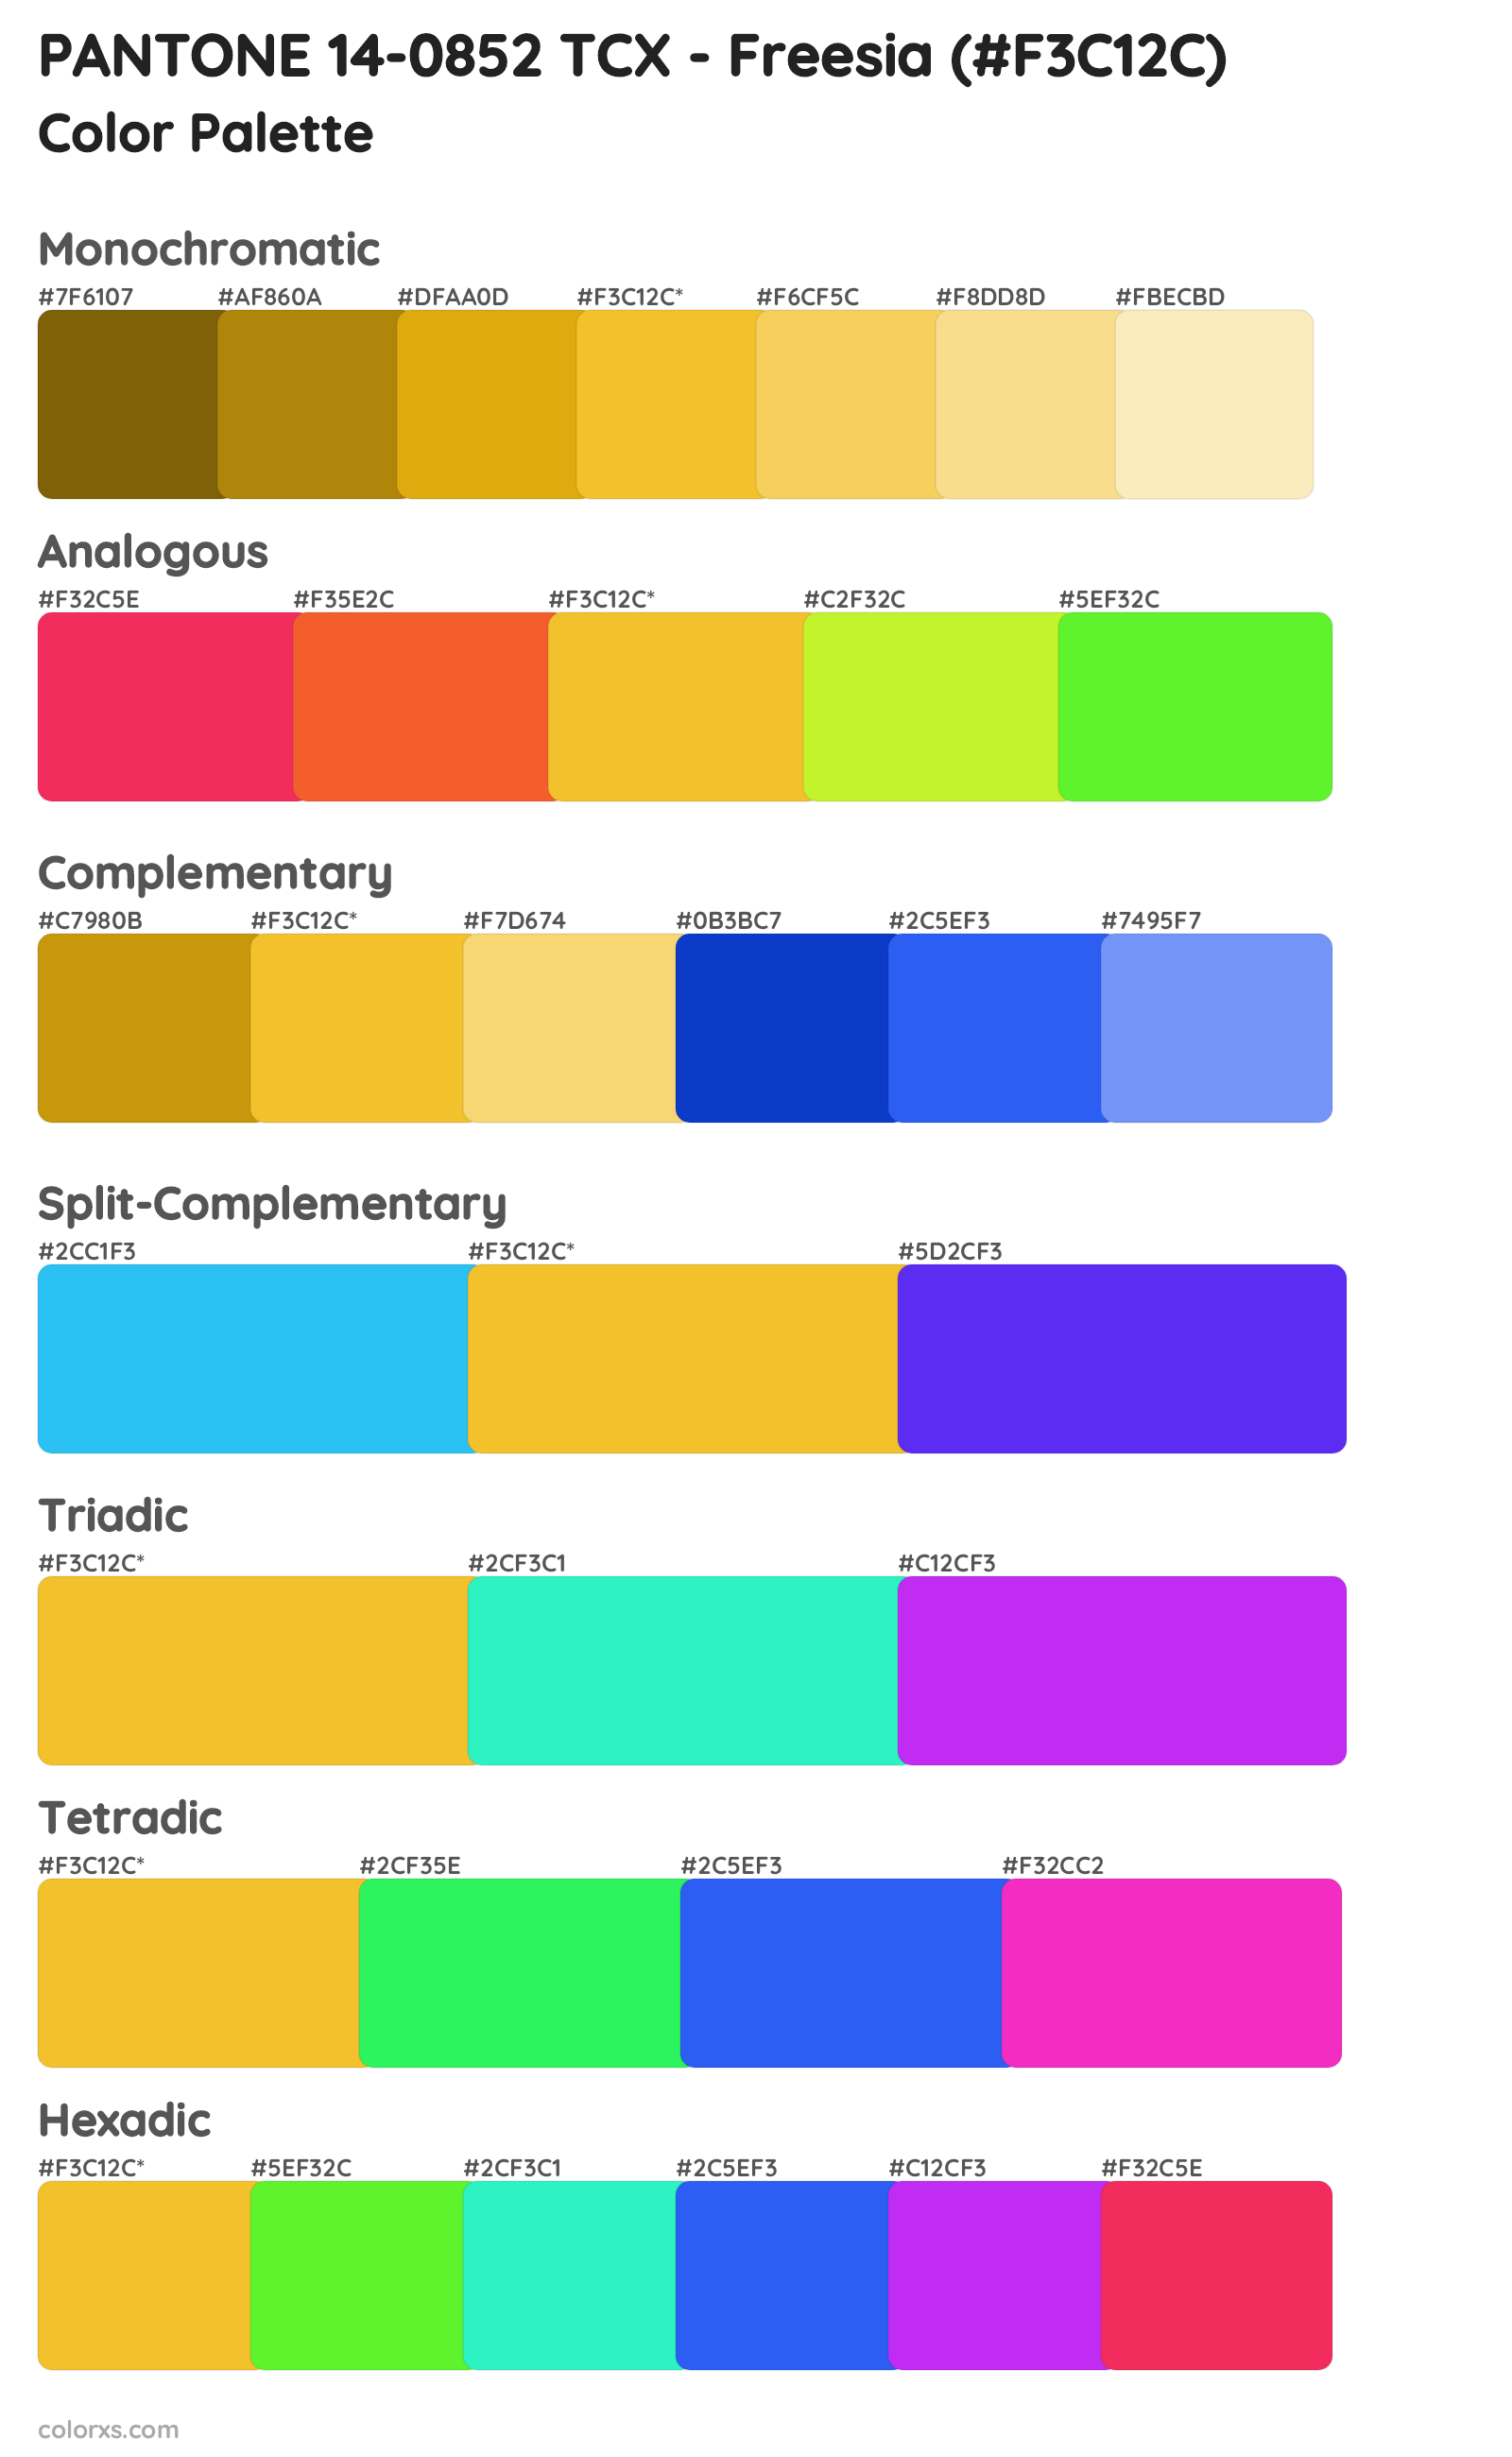 PANTONE 14-0852 TCX - Freesia Color Scheme Palettes